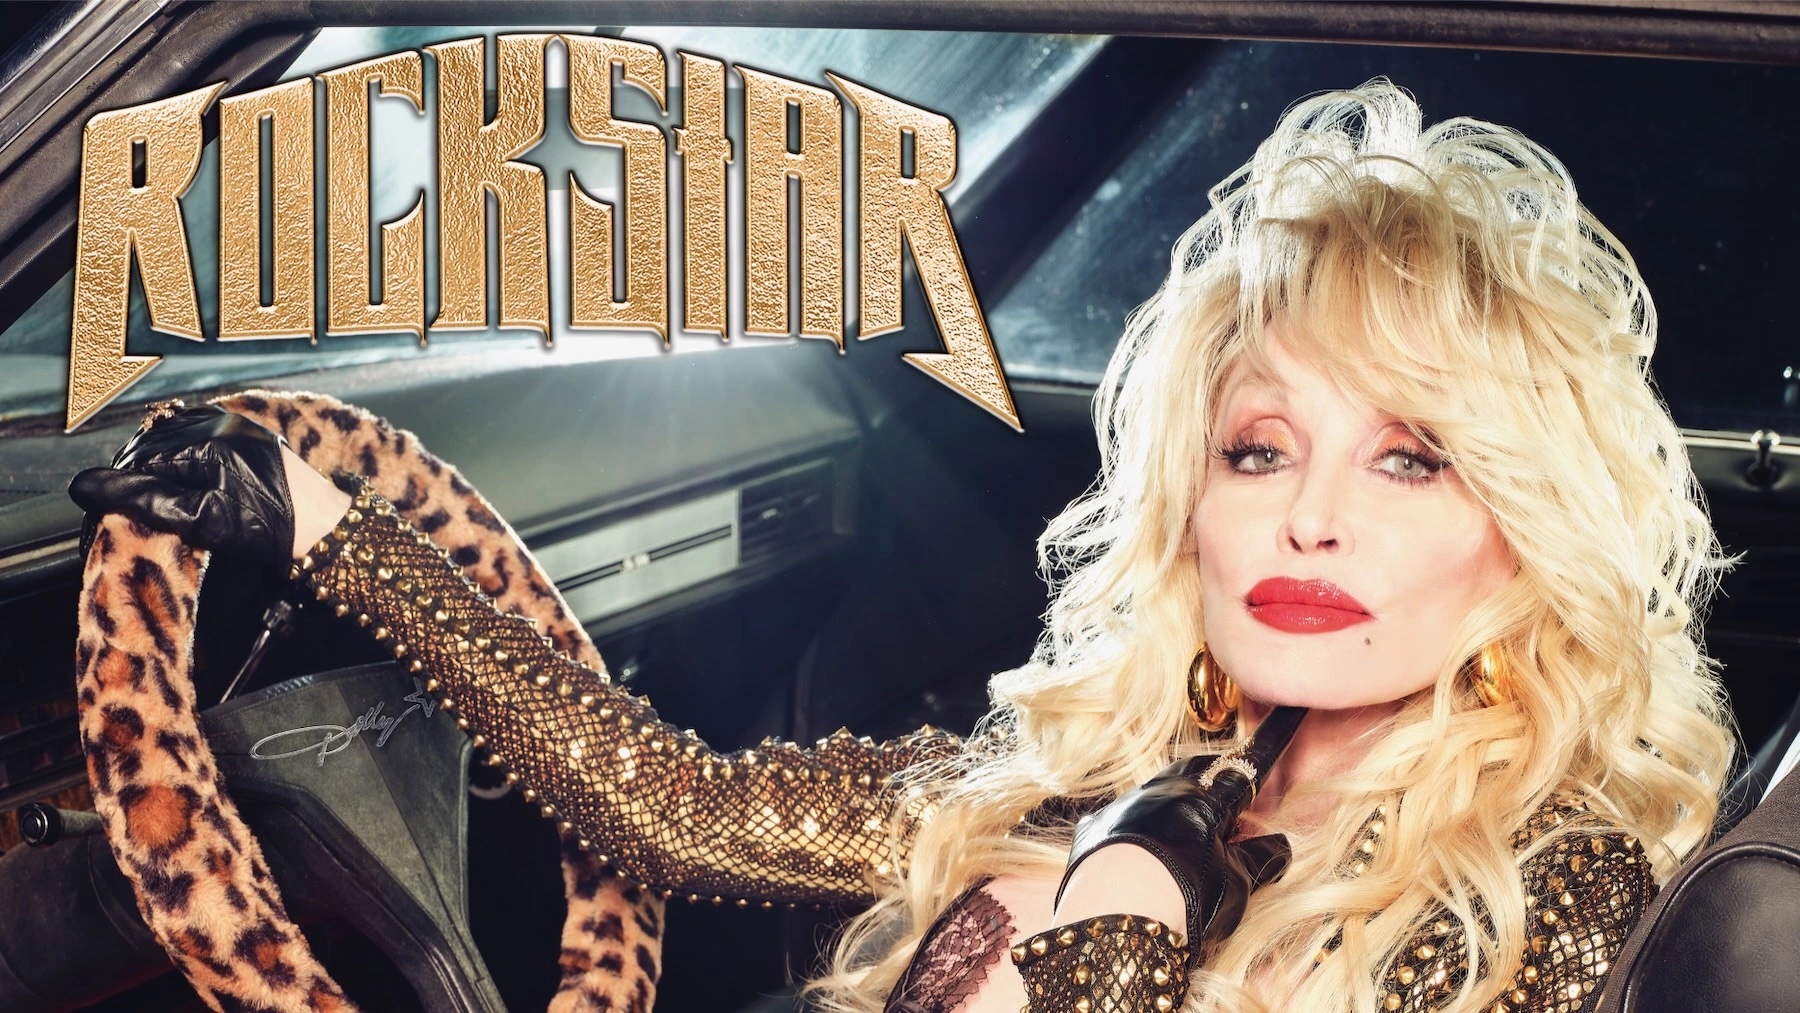 Dolly Parton Rockstar album cover art